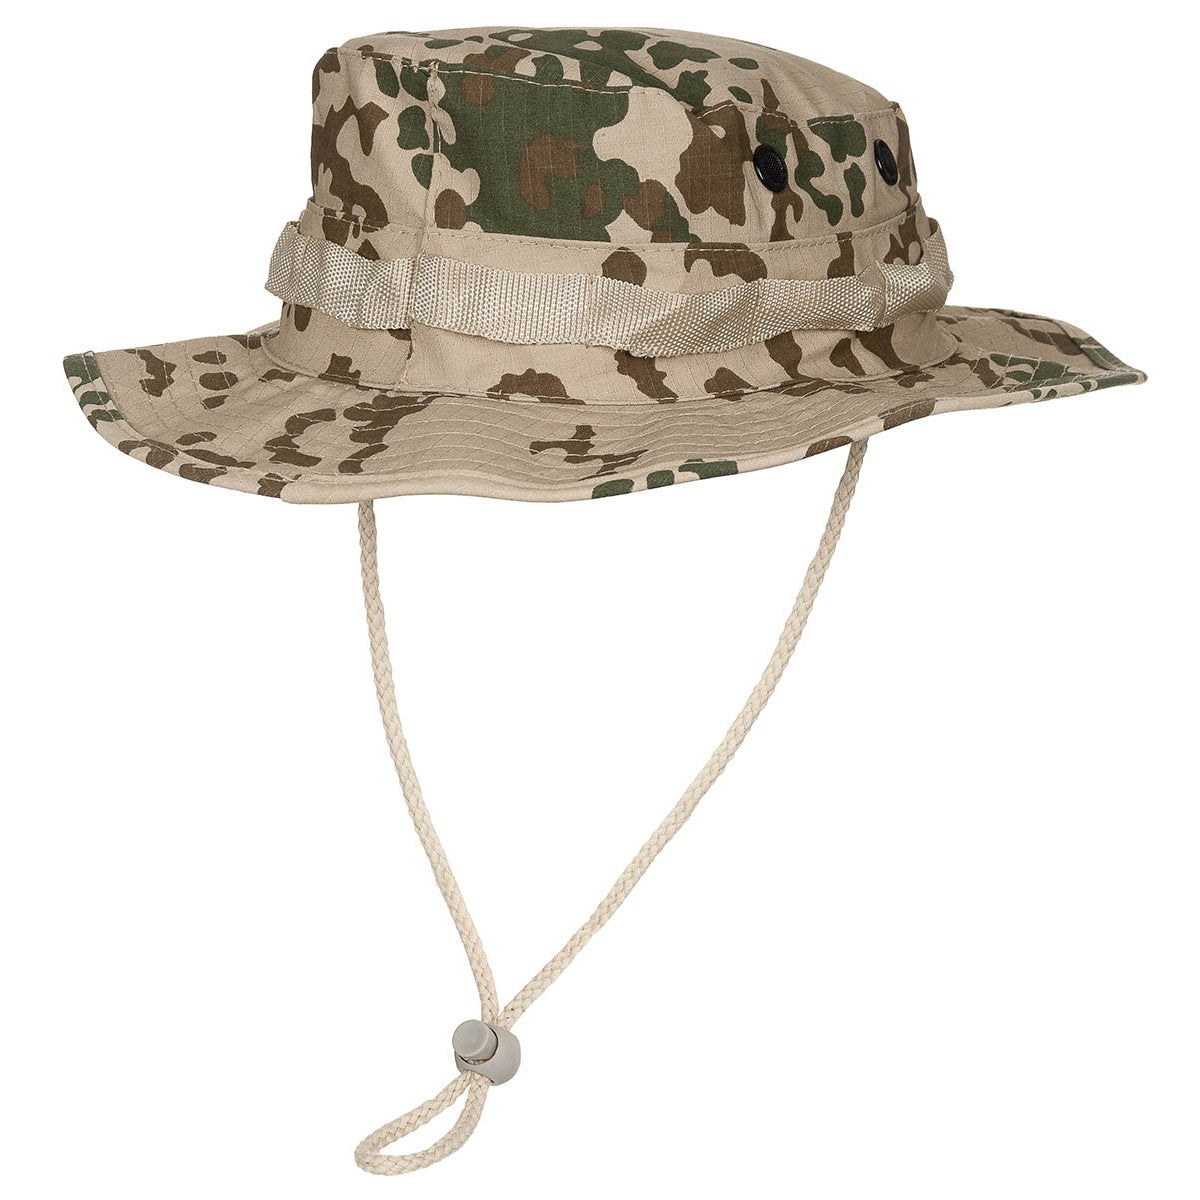 כובע בוש בוני טקטי, הסוואה טרופית עם רצועת סנטר